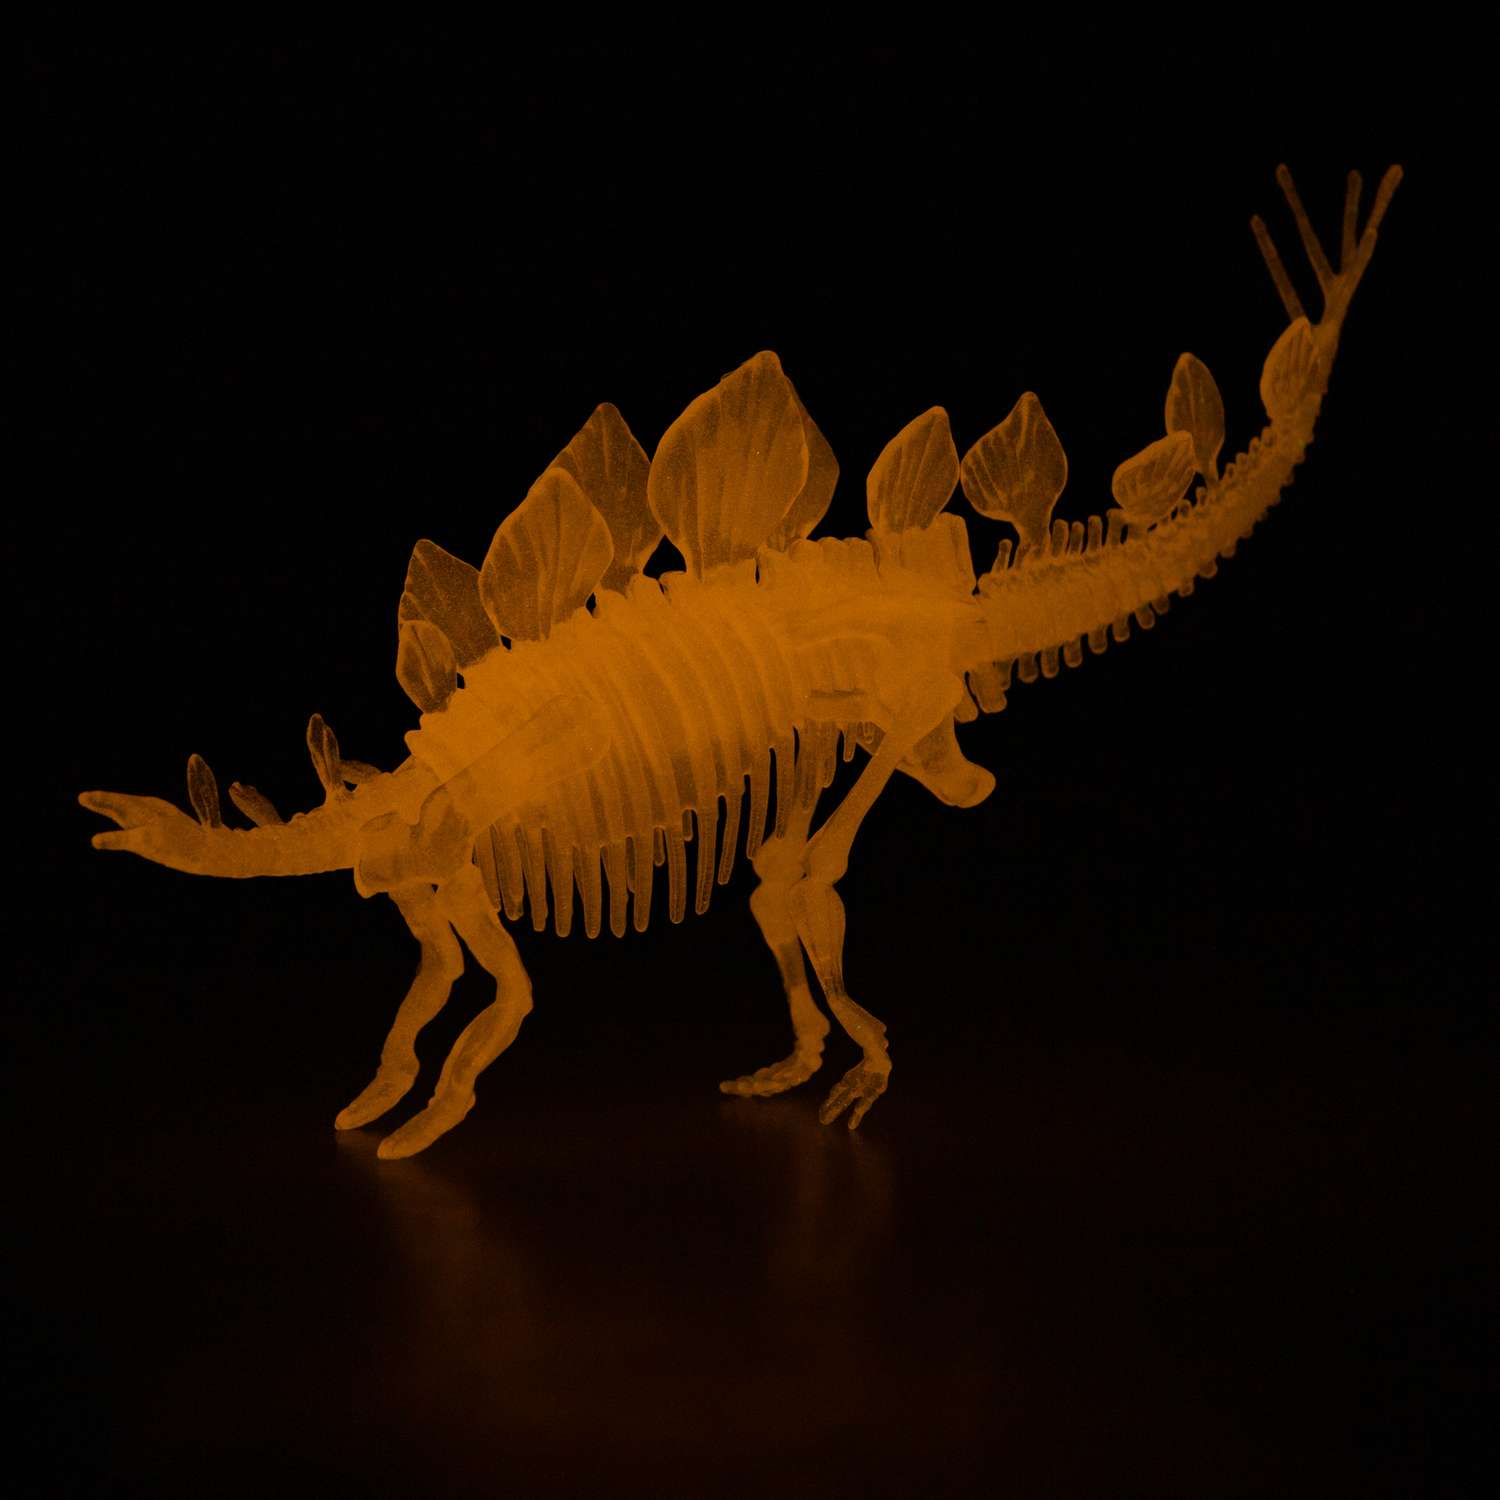 Сборная модель 1TOY 3dino luminus люминисцентный скелет динозавра - фото 2